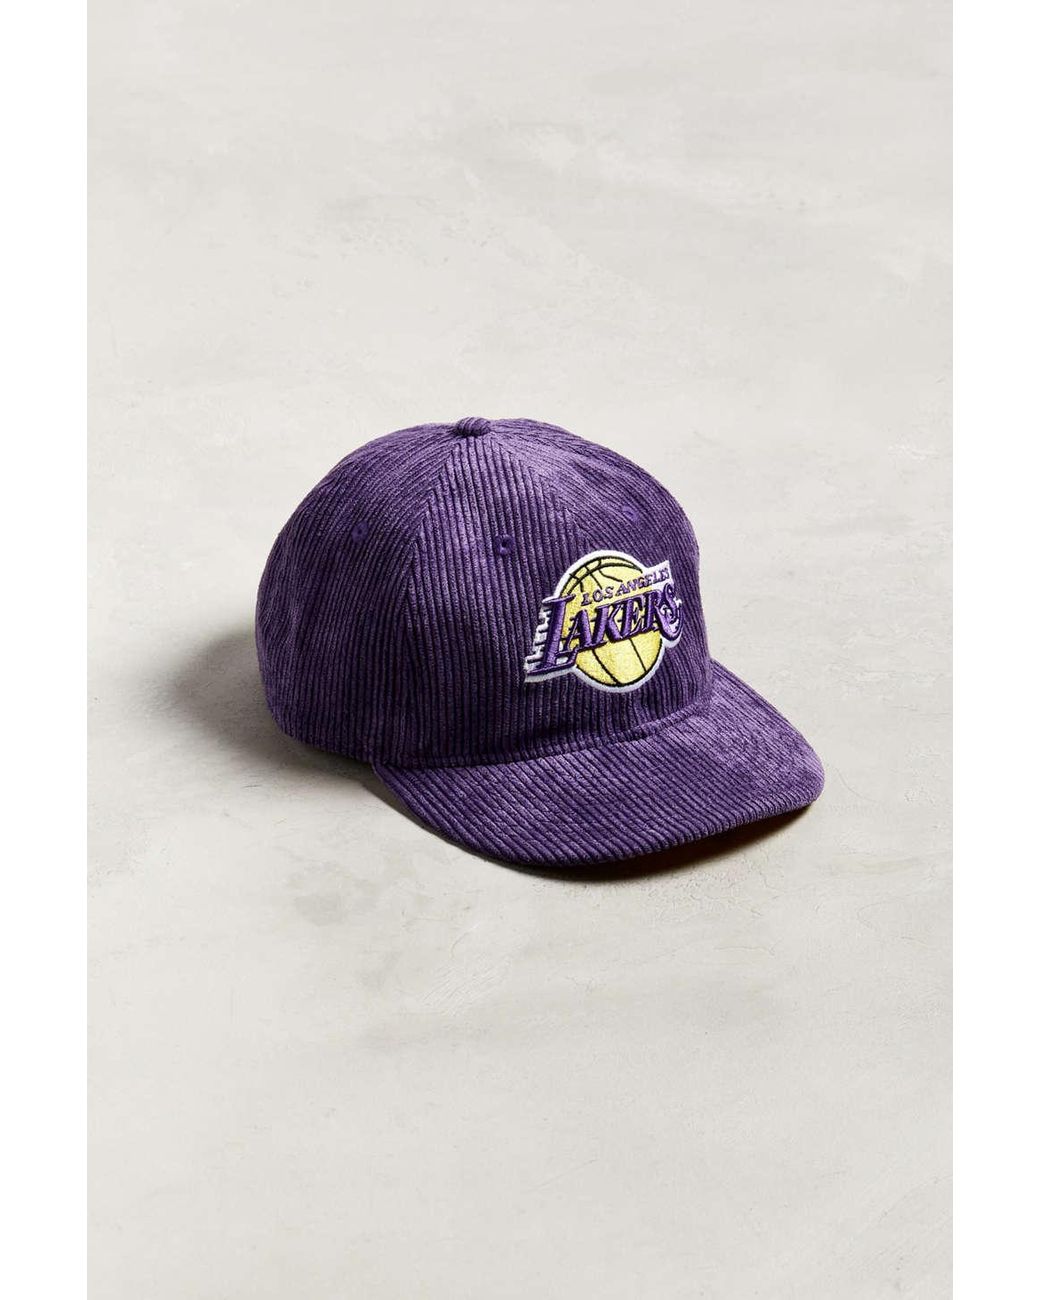 Upside Down Los Angeles Lakers Snapback Black Corduroy Hat -  Norway